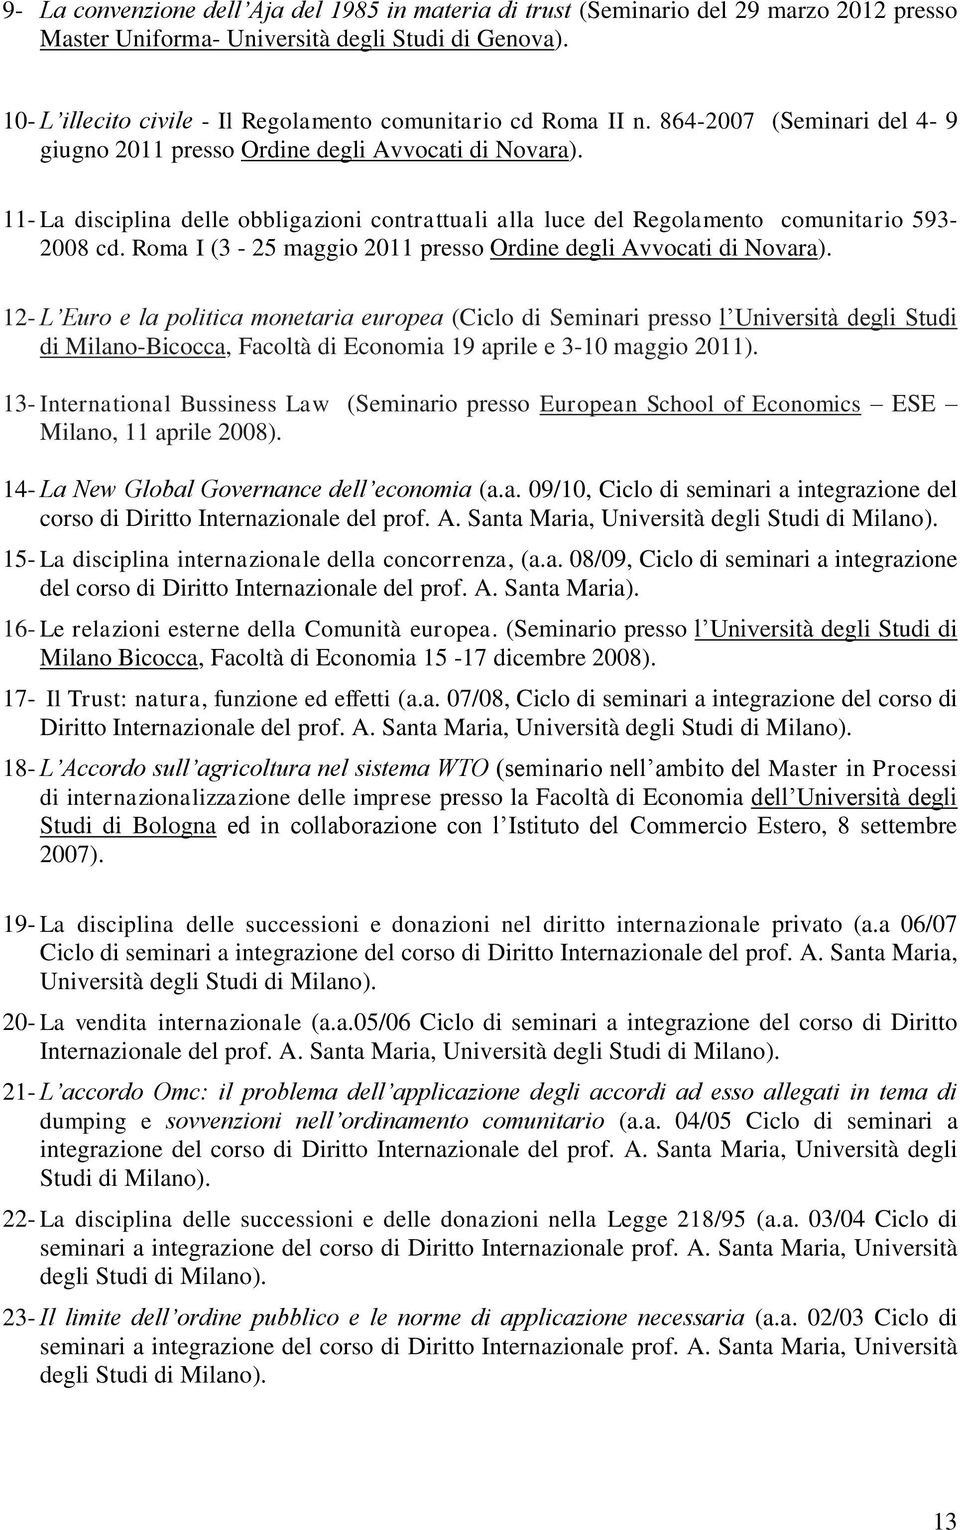 11- La disciplina delle obbligazioni contrattuali alla luce del Regolamento comunitario 593-2008 cd. Roma I (3-25 maggio 2011 presso Ordine degli Avvocati di Novara).